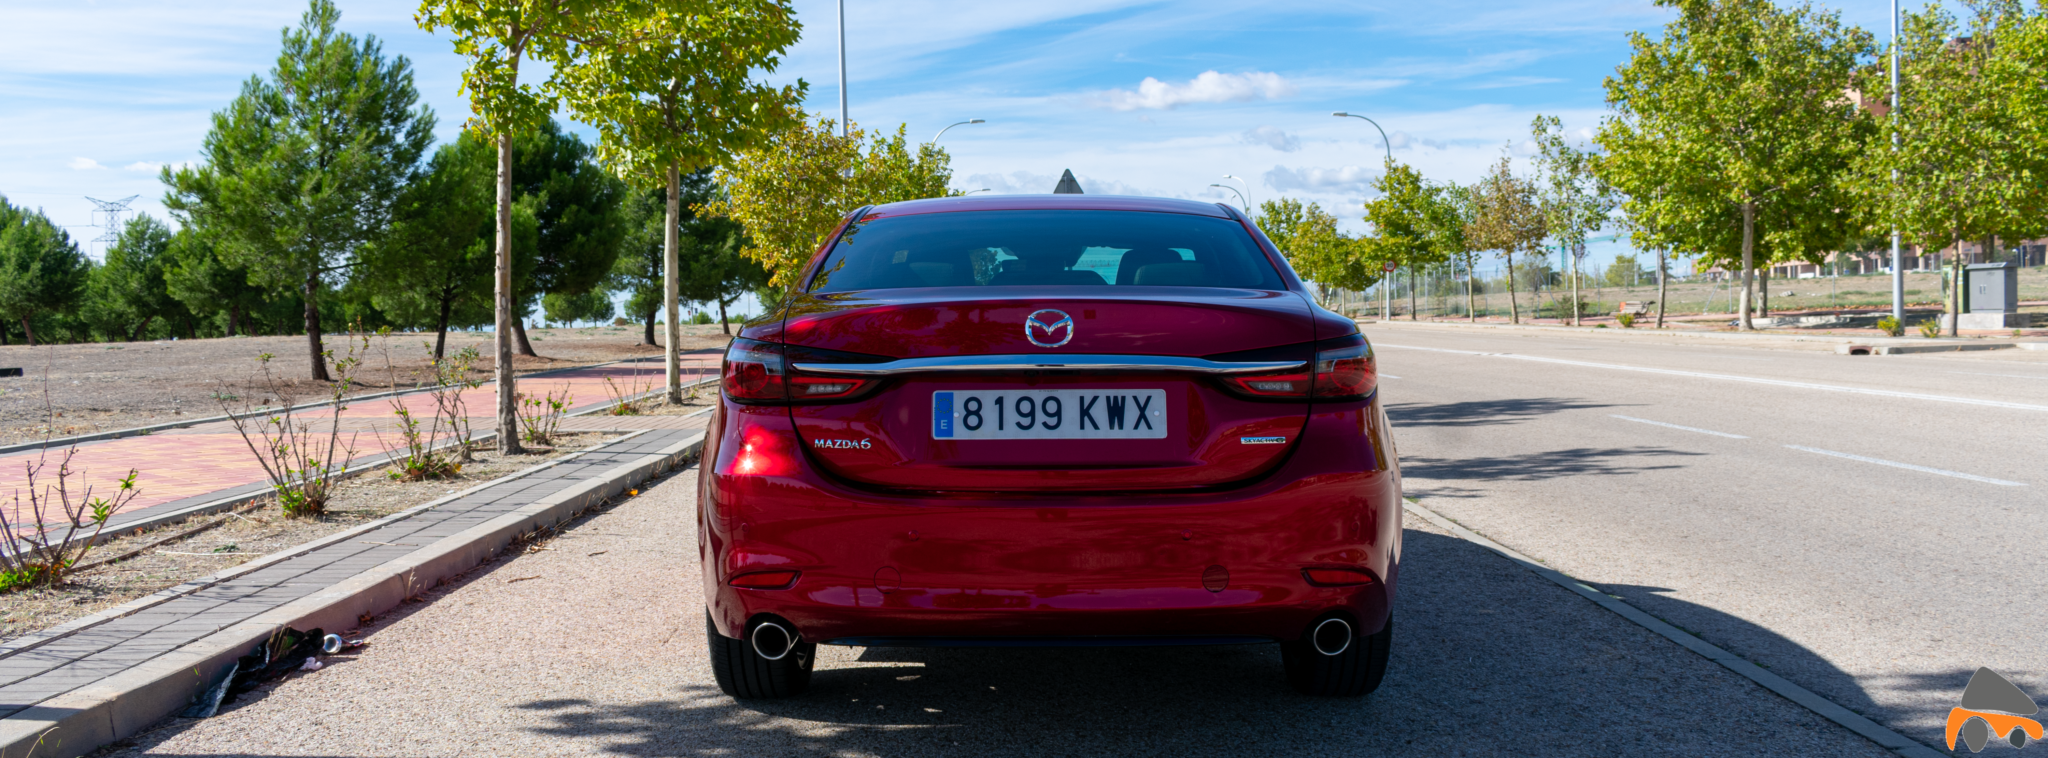 Trasera Mazda6 - Mazda6 Signature gasolina: Una berlina con potencia y consumos ajustados